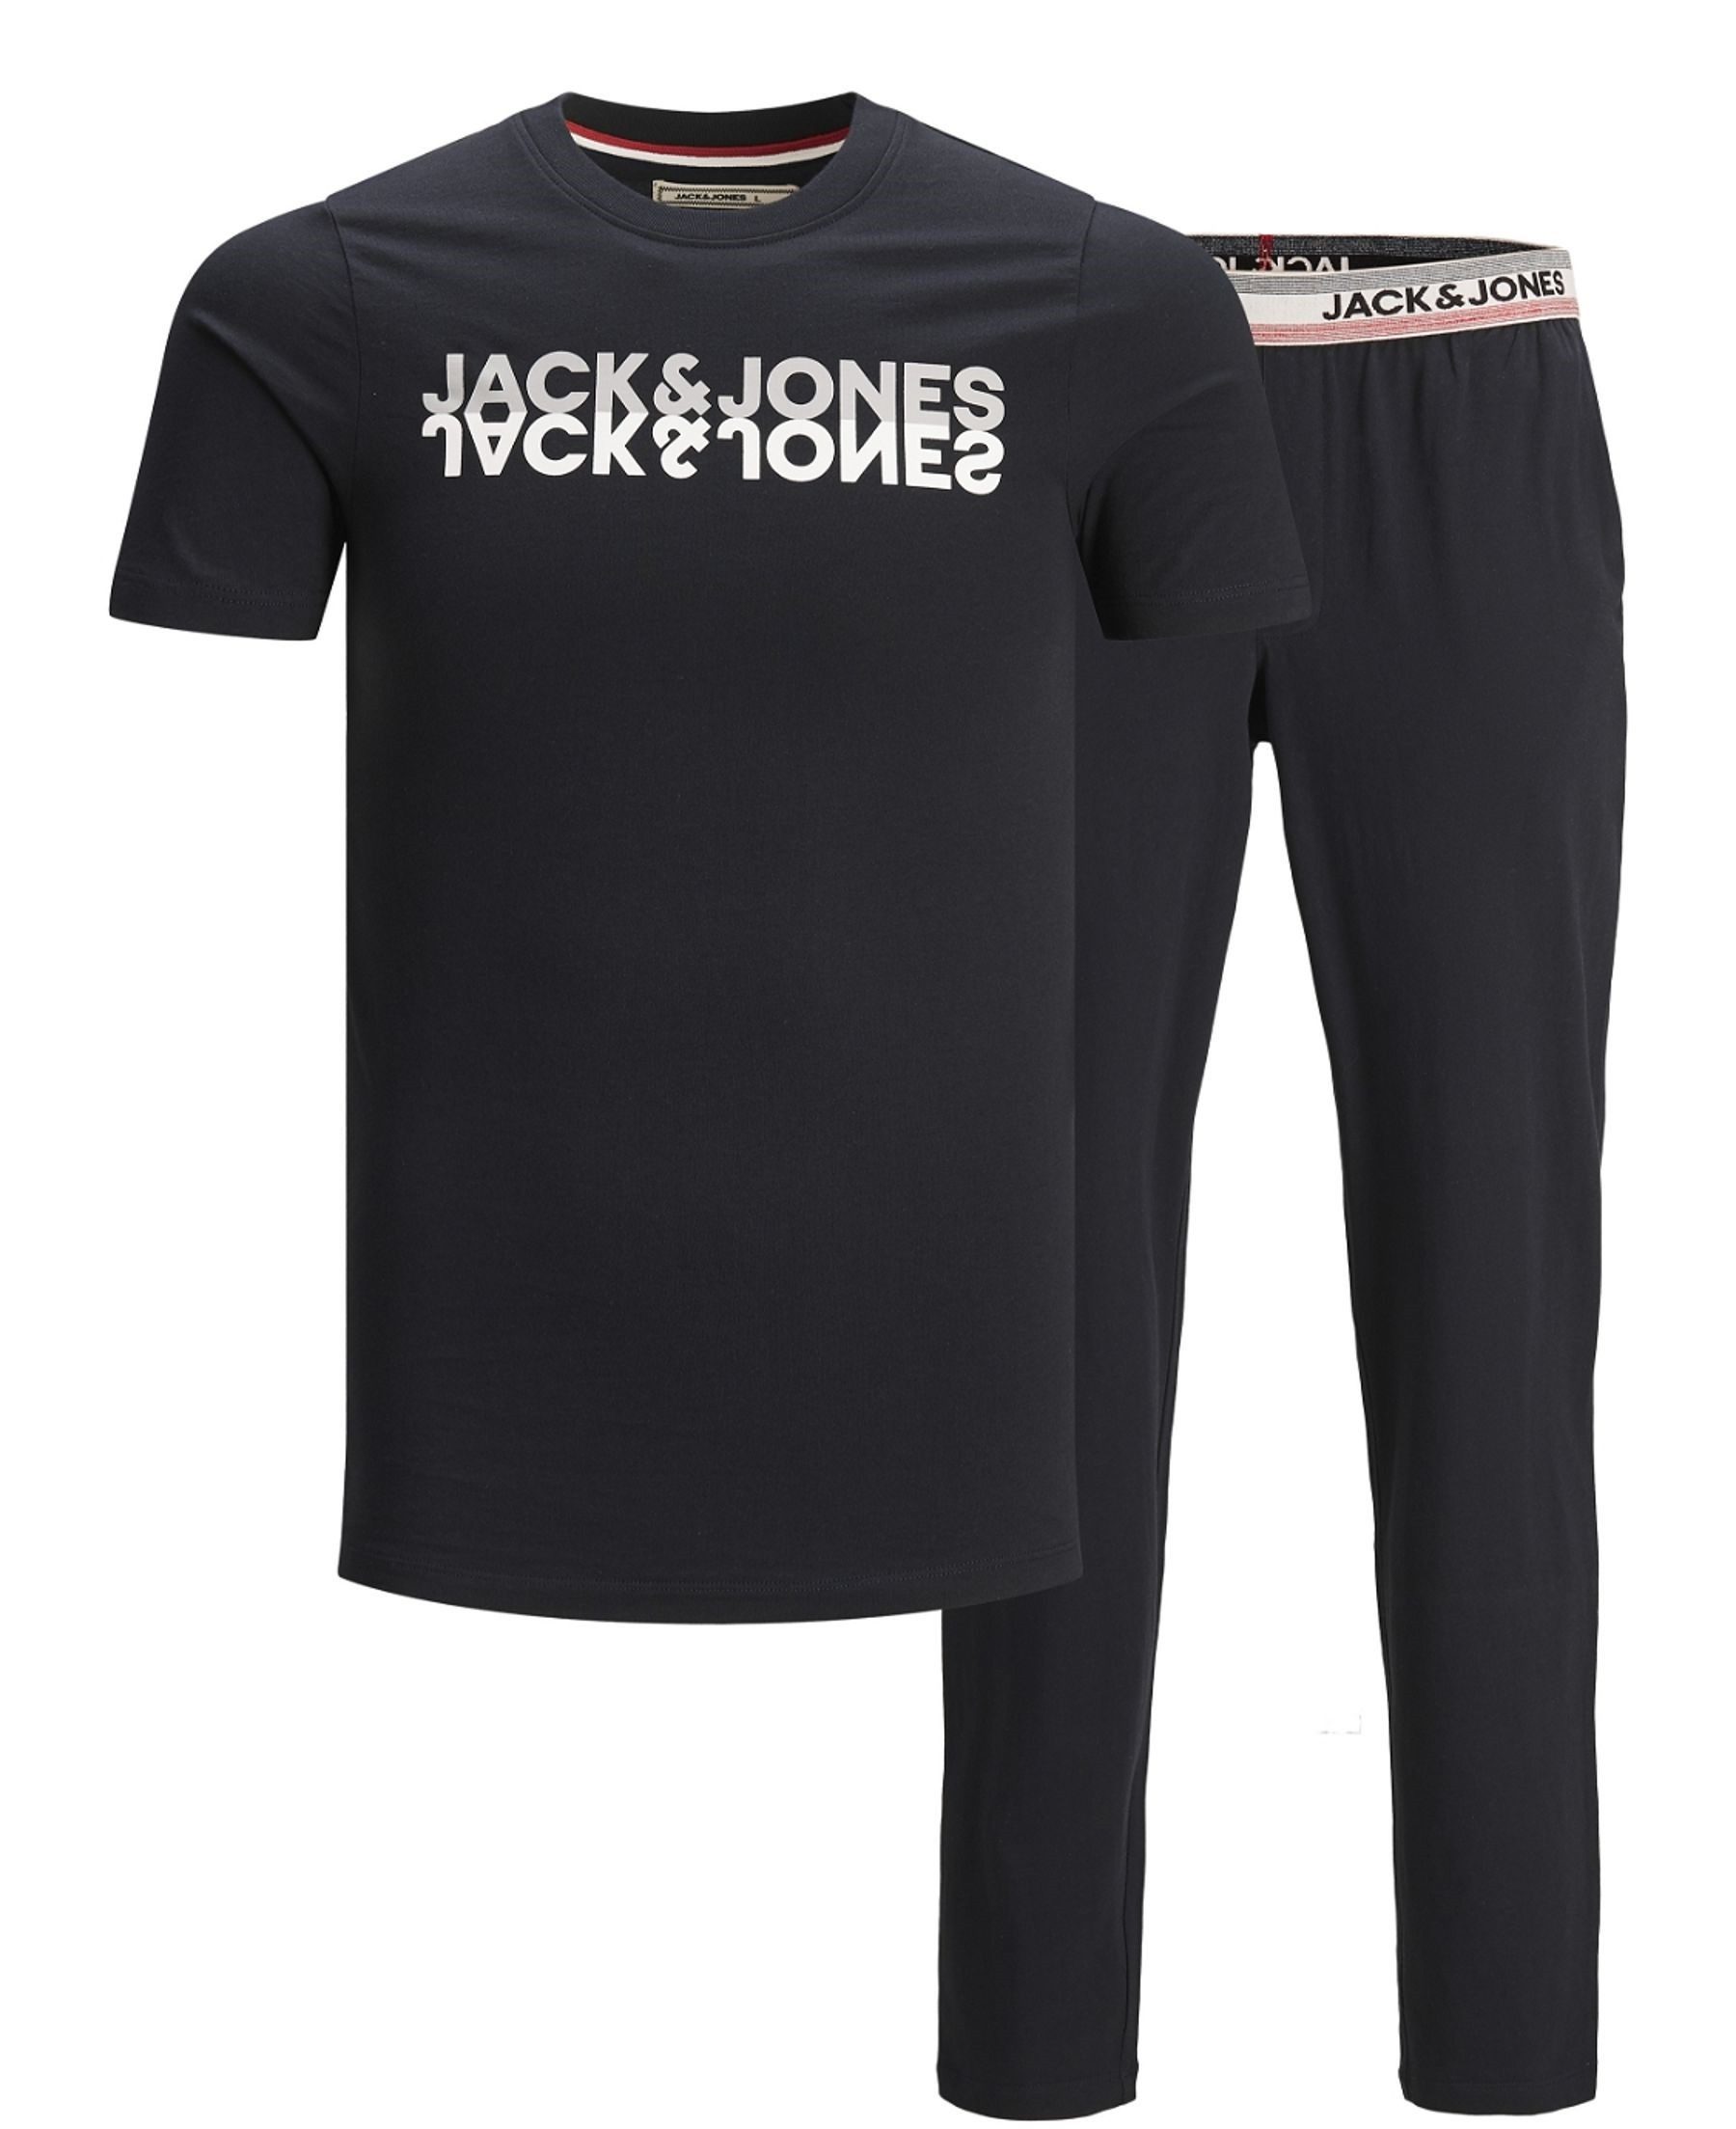 Jack & Jones Pyjama Herren Pyjama Set JACJONES LOUNGE SET S/S